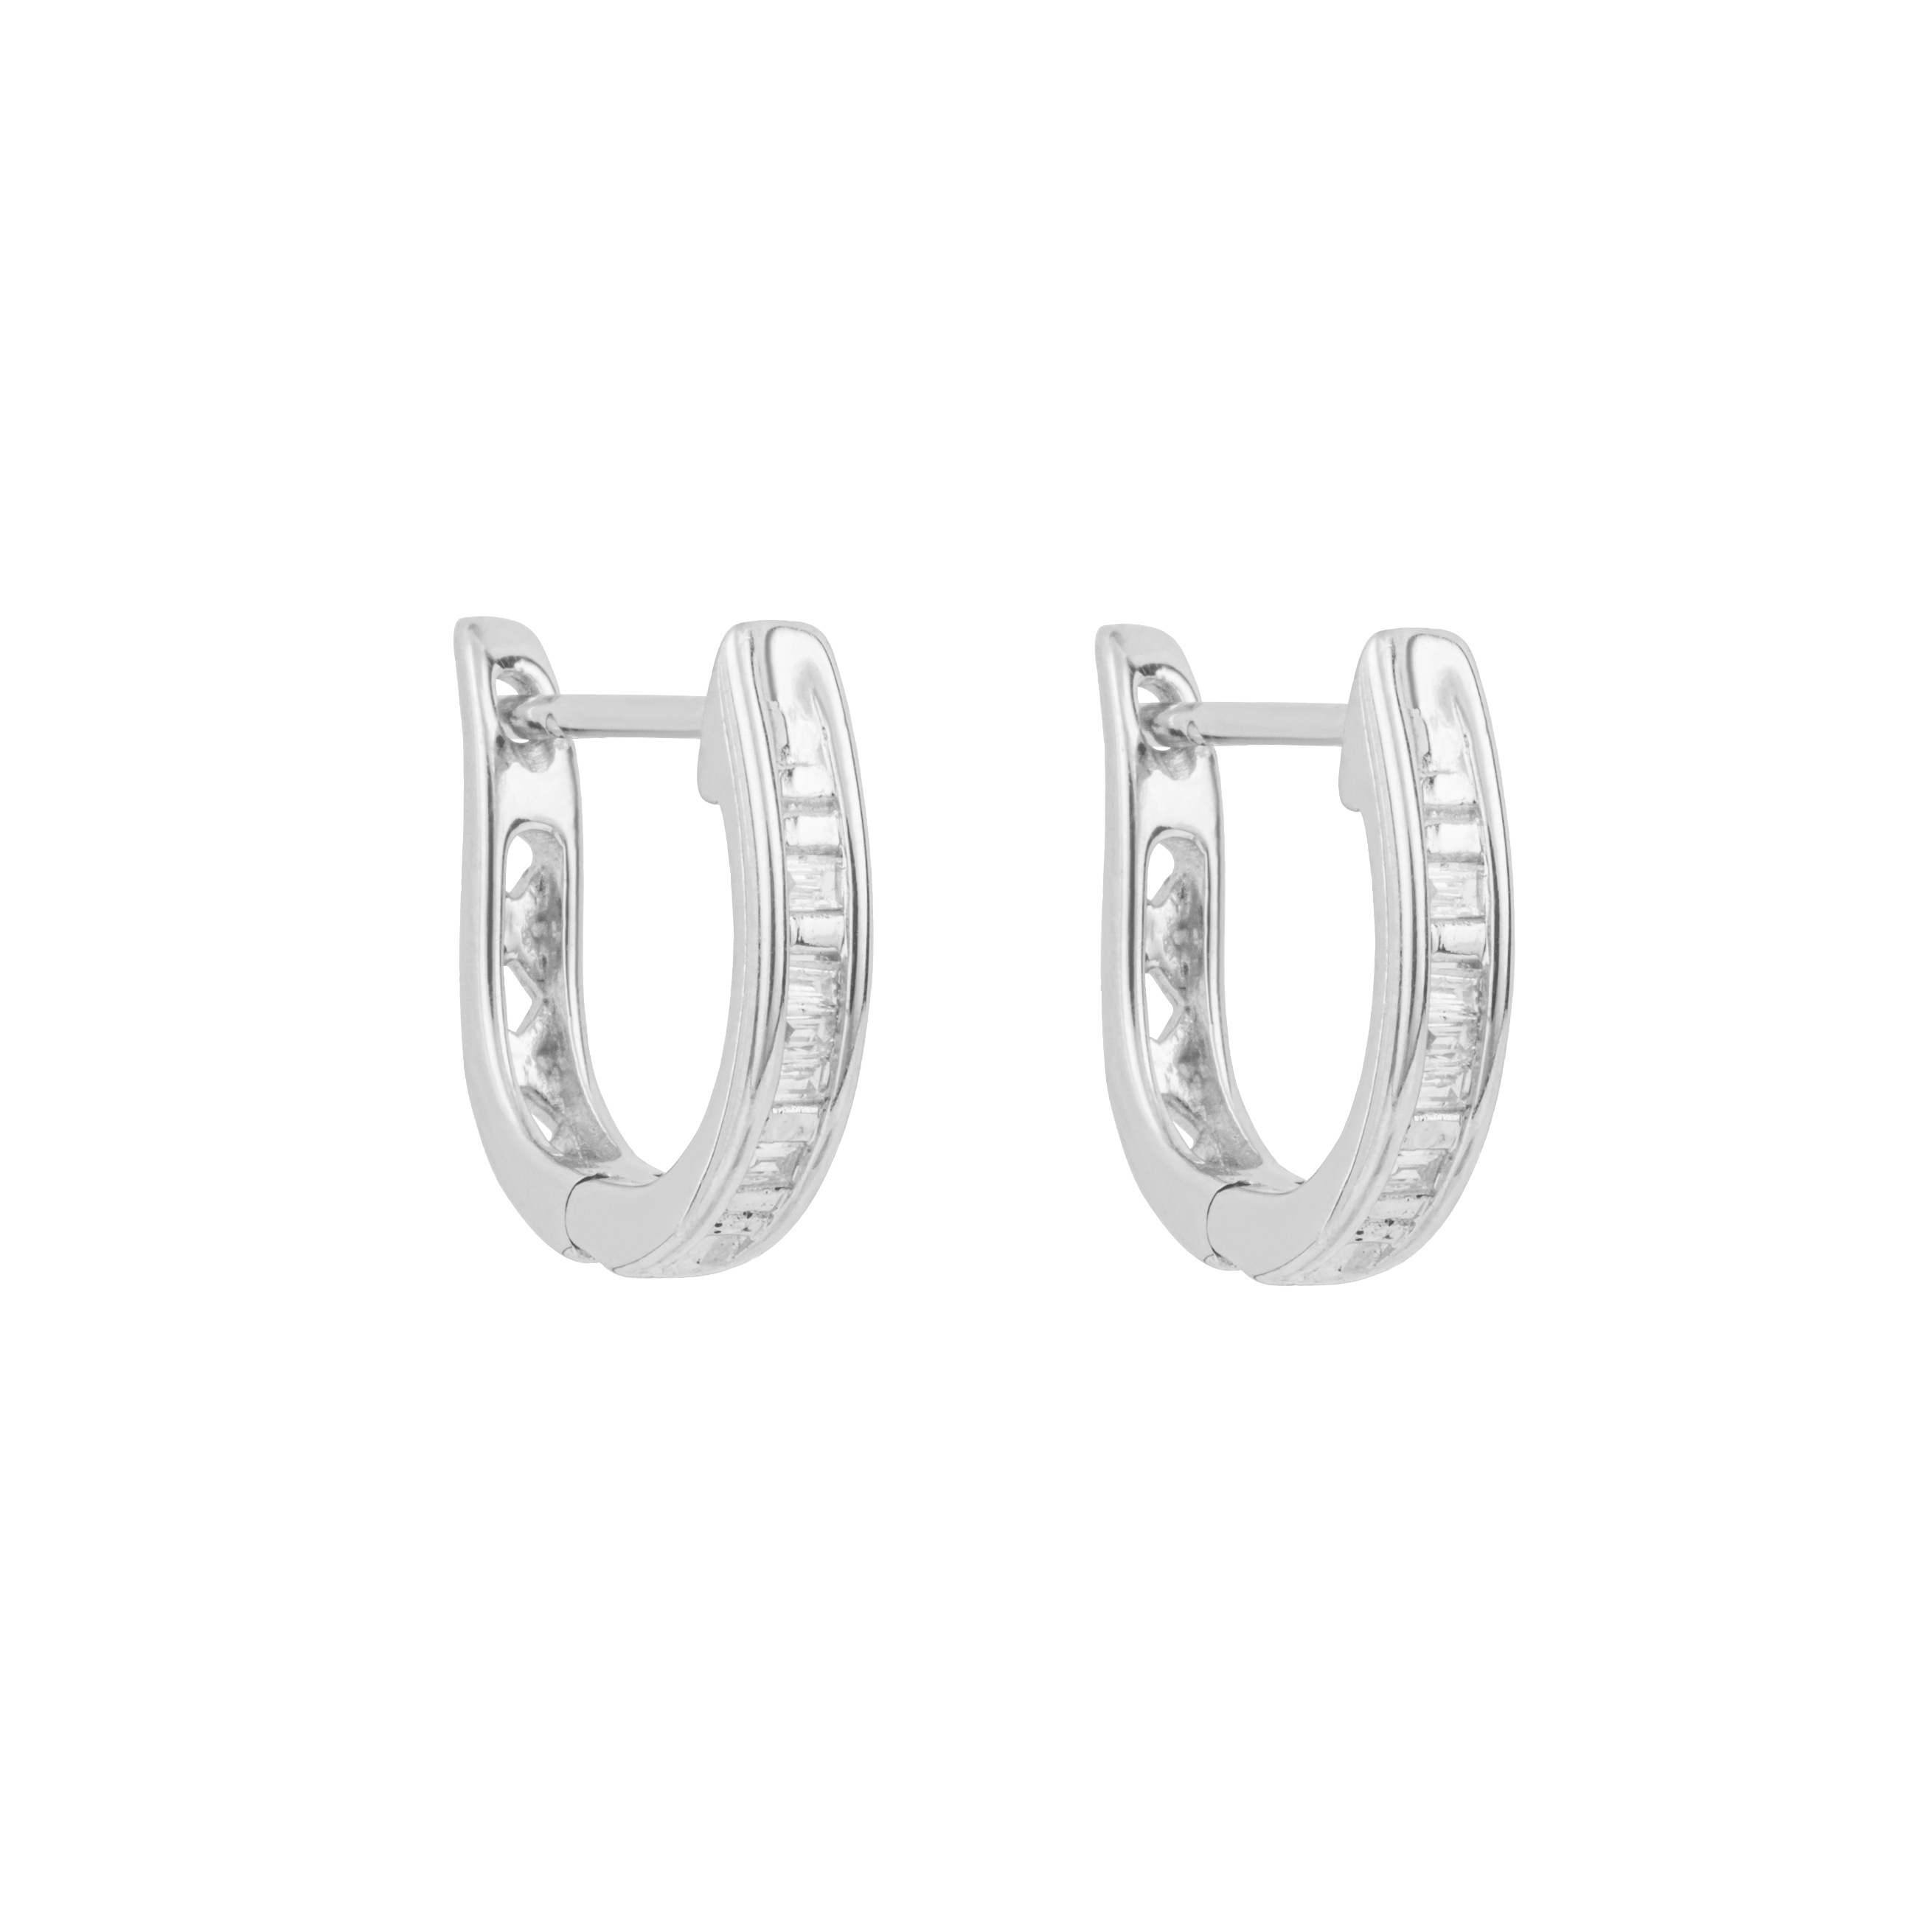 Baguette Diamond Hoop Earrings in 9ct White Gold - Robert Anthony Jewellers, Edinburgh